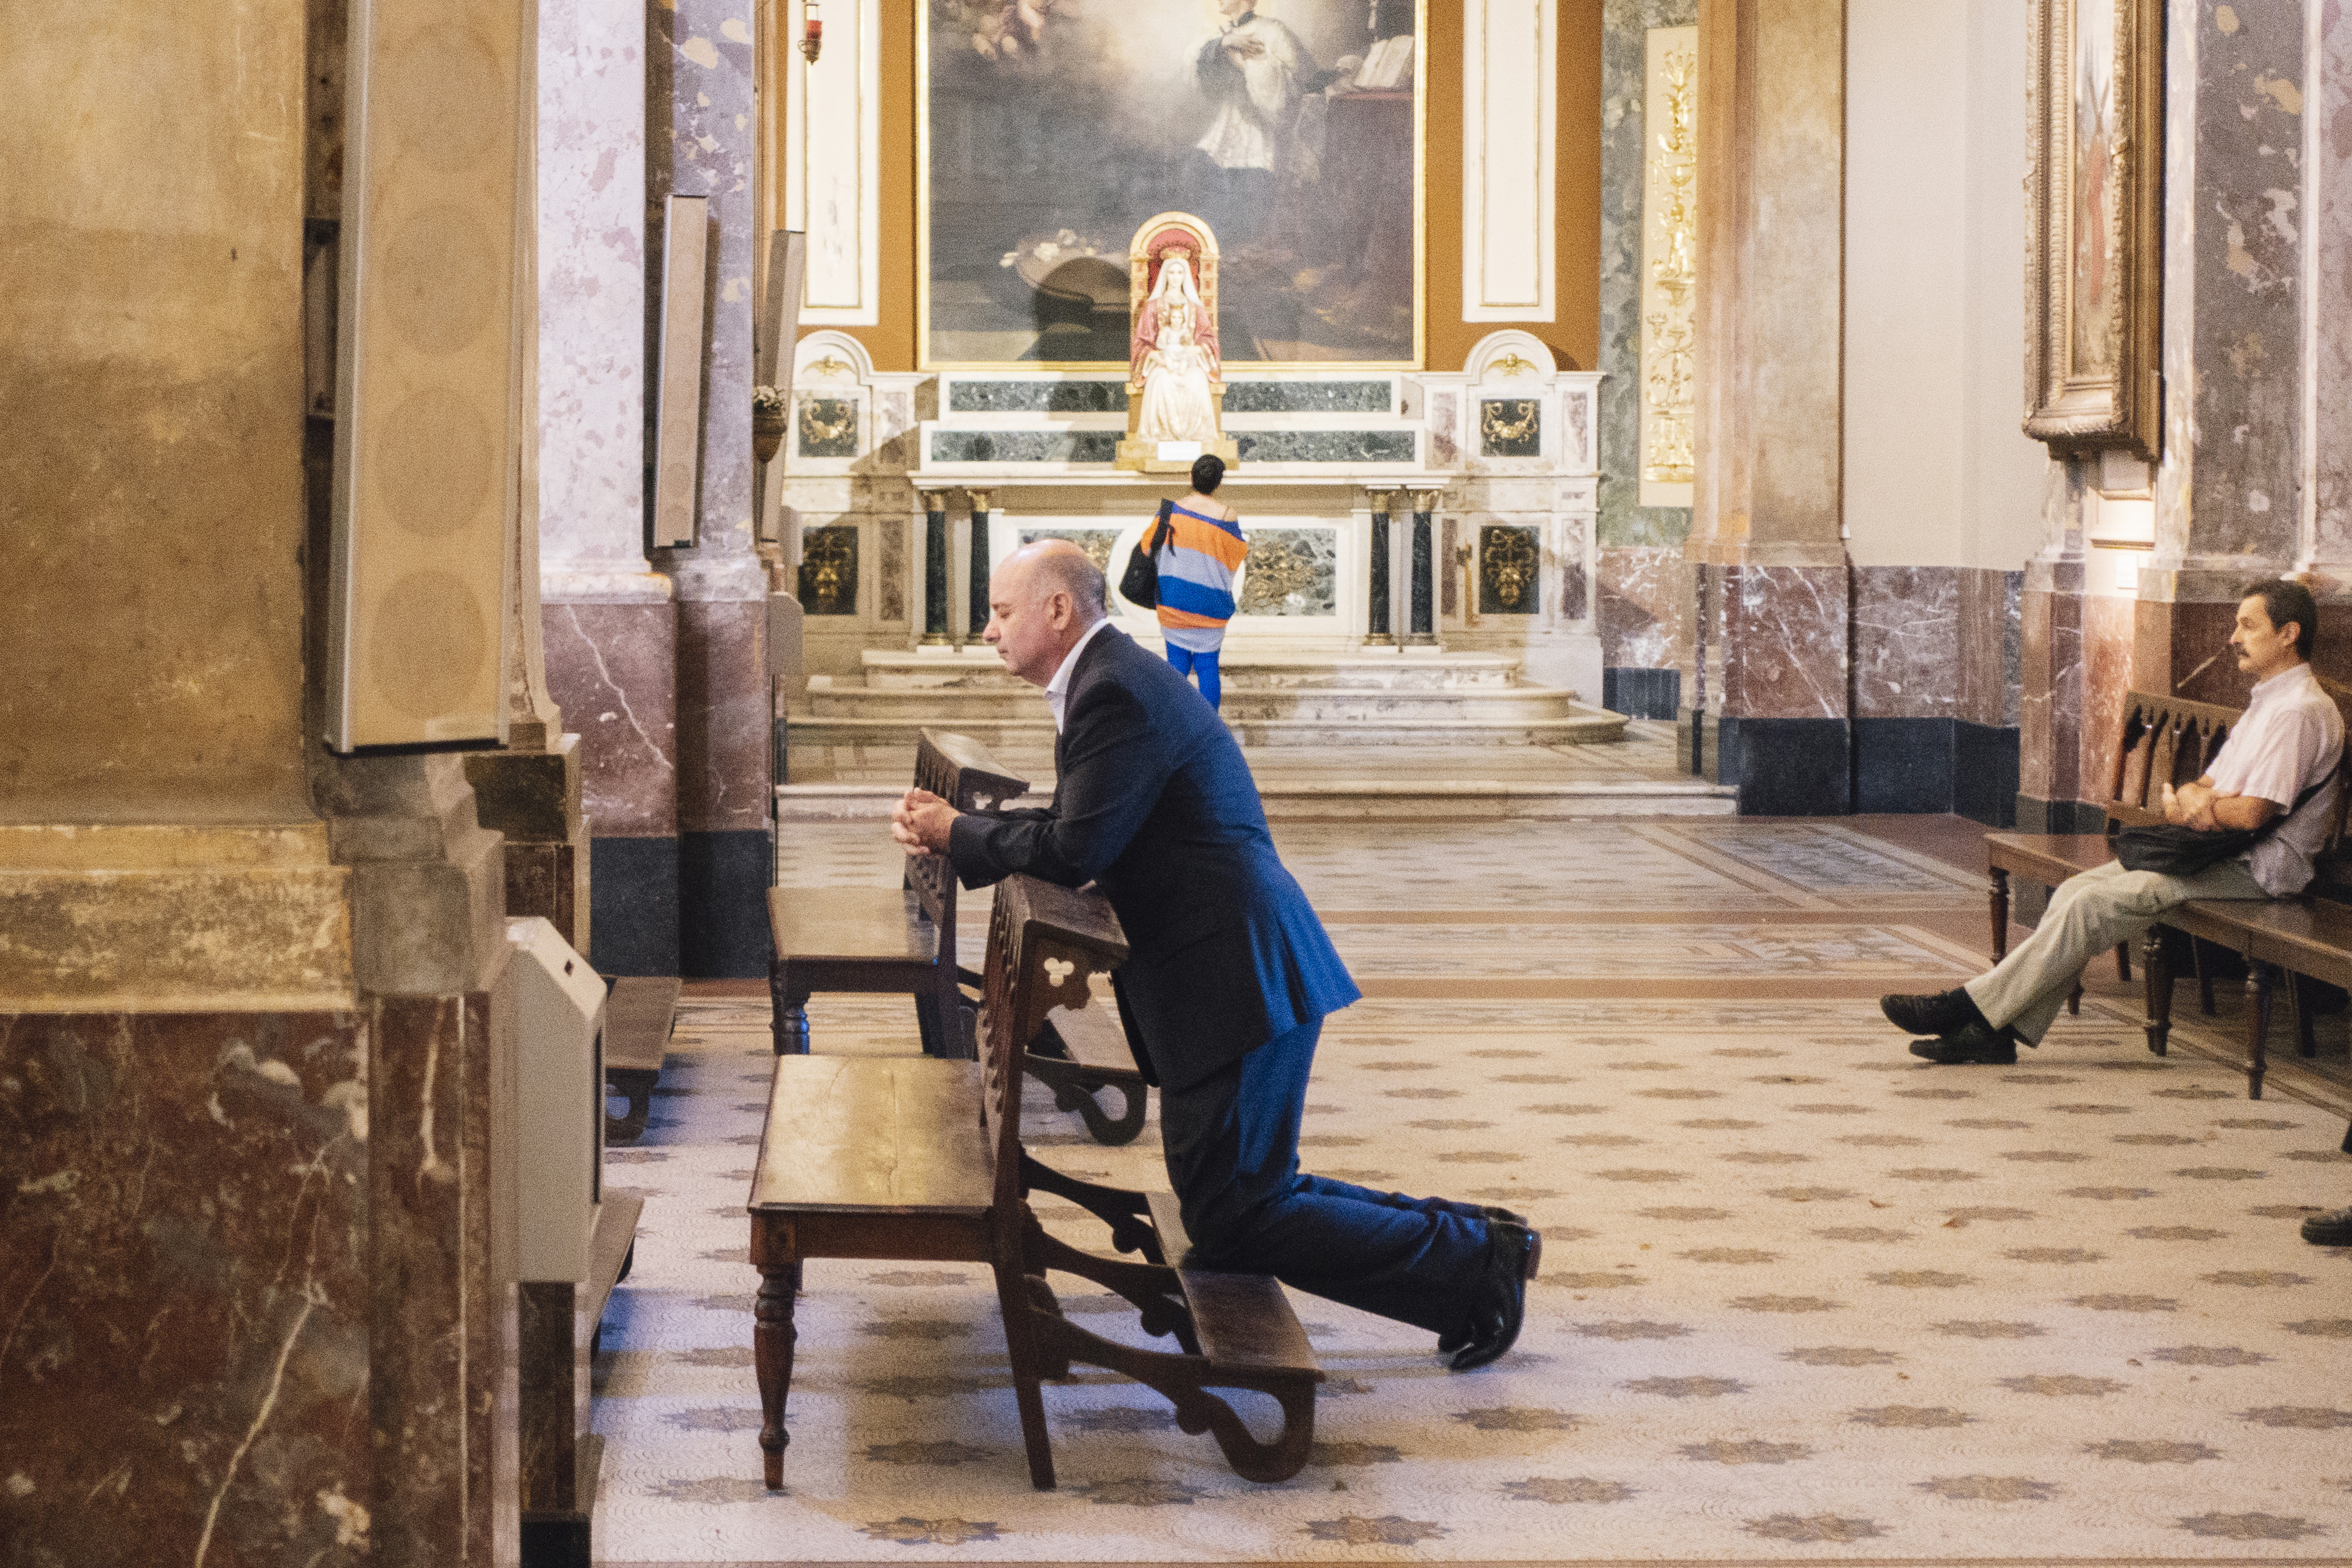 프란치스코 교황이 교황 부임 전에 재직했던 부에노스아이레스 대성당에서 한 남성이 장궤를 하고 기도하고 있다. 류재민 기자